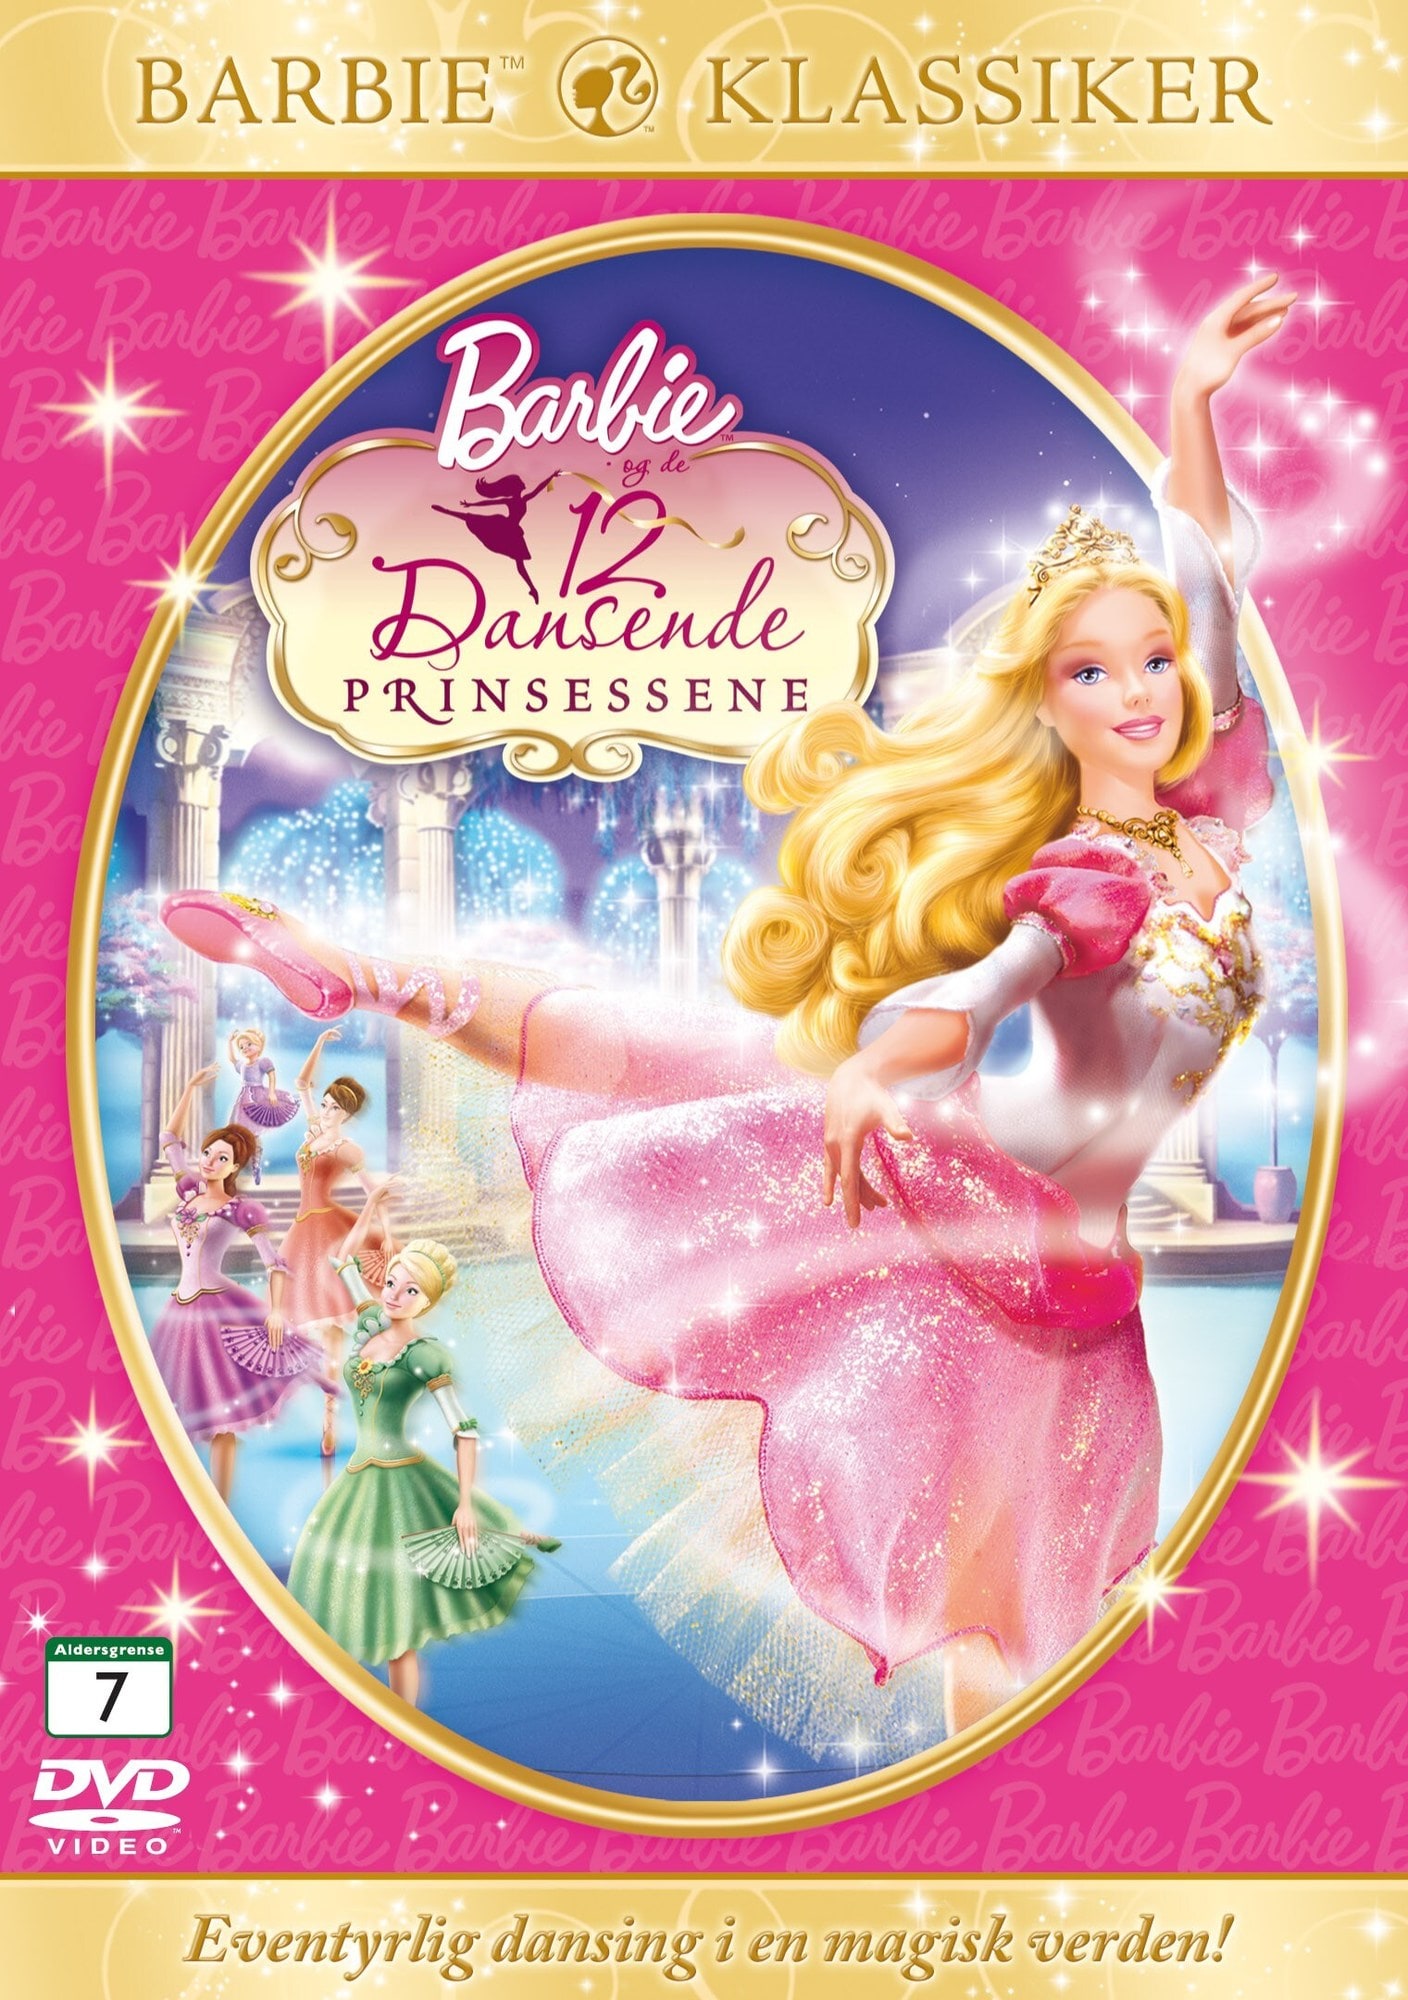 Barbie - 12 tanssivaa prinsessaa (DVD) - Gigantti verkkokauppa